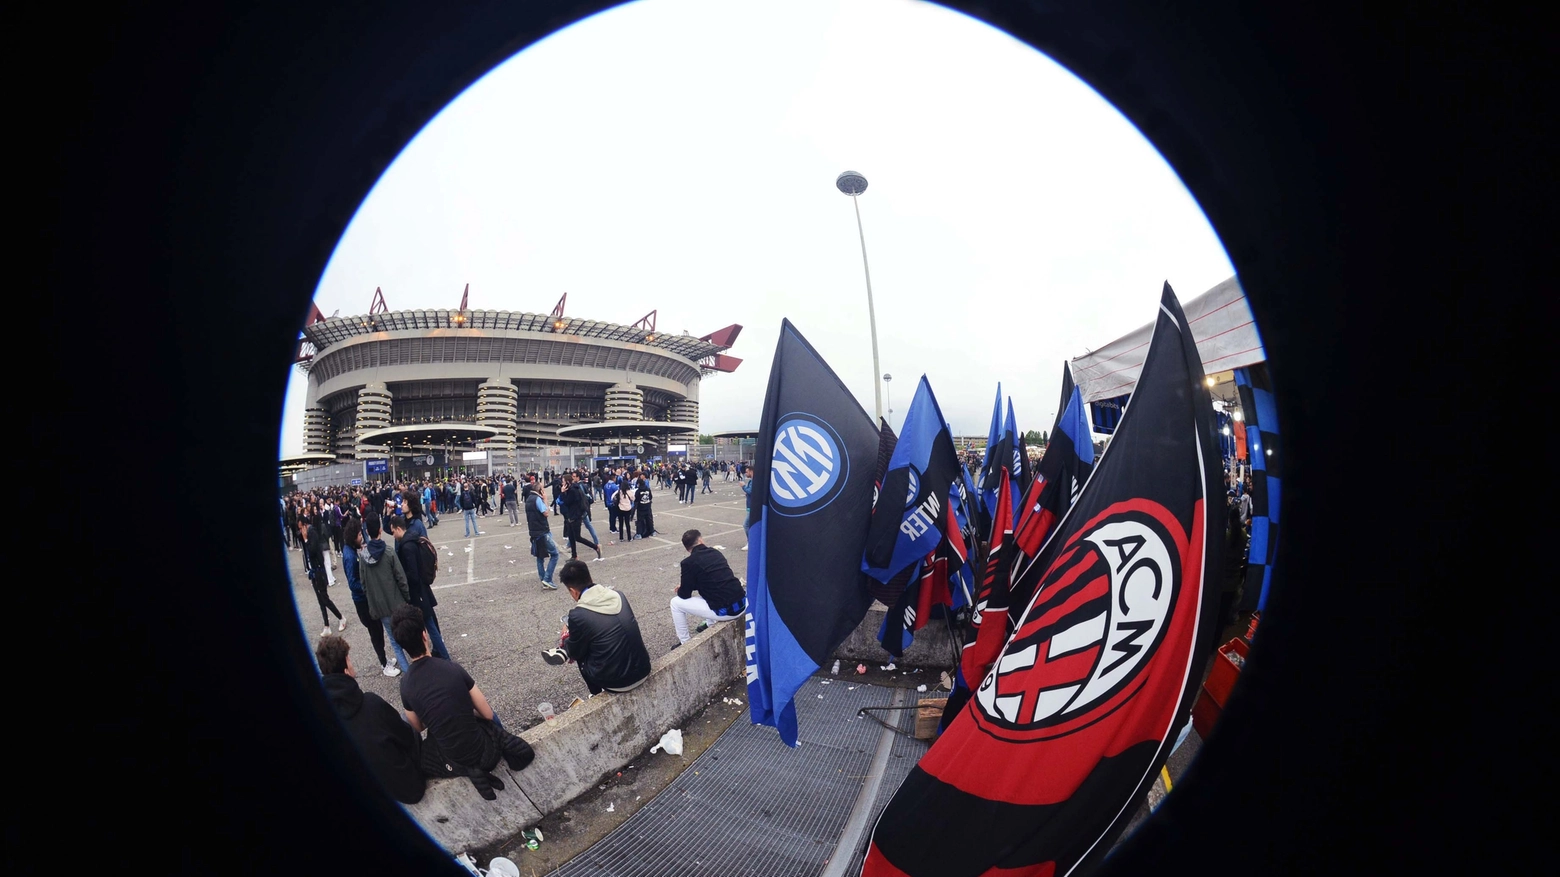 La stracittadina Milan-Inter di lunedì 22 aprile con il “rischio” della festa scudetto nerazzurra dopo la partita rende necessaria la presenza della polizia locale